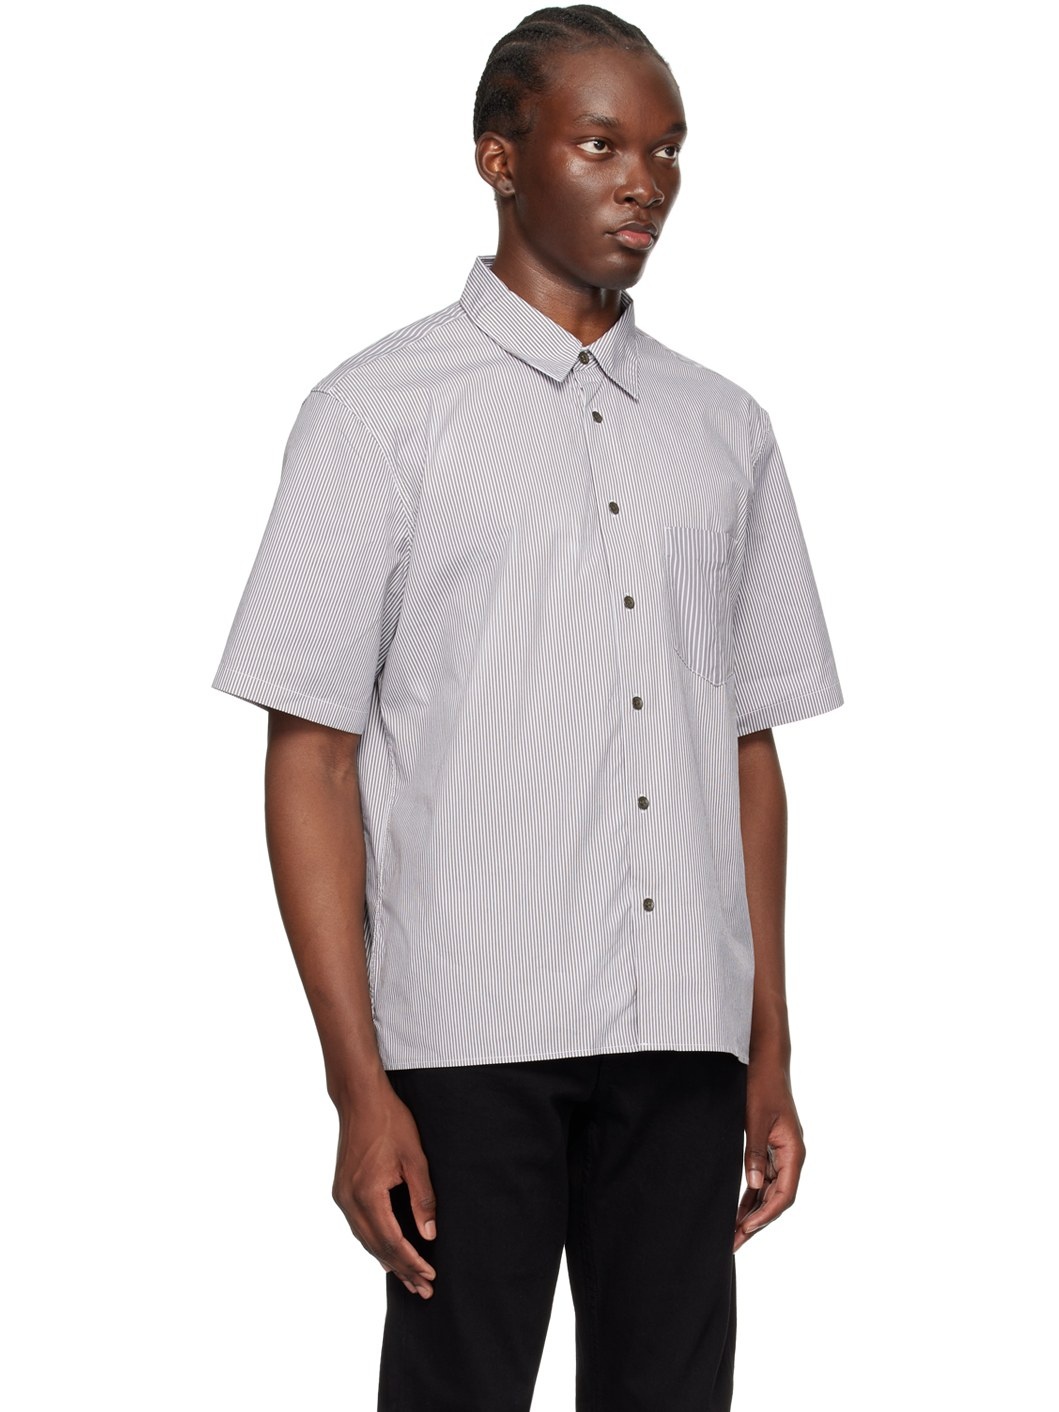 Gray & White Dalton Shirt - 2